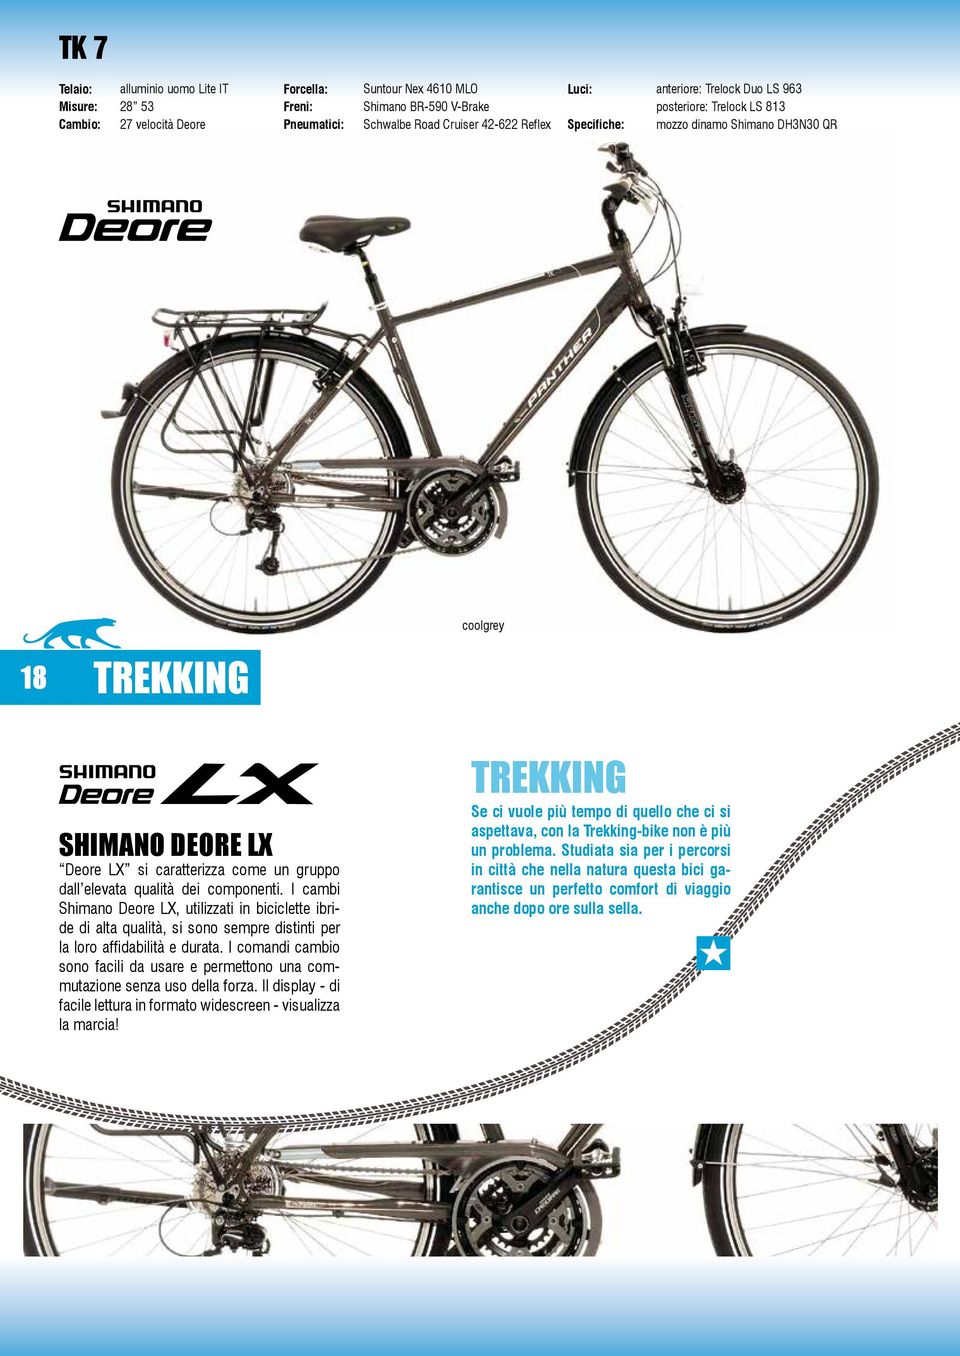 I cambi Shimano Deore LX, utilizzati in biciclette ibride di alta qualità, si sono sempre distinti per la loro affidabilità e durata.